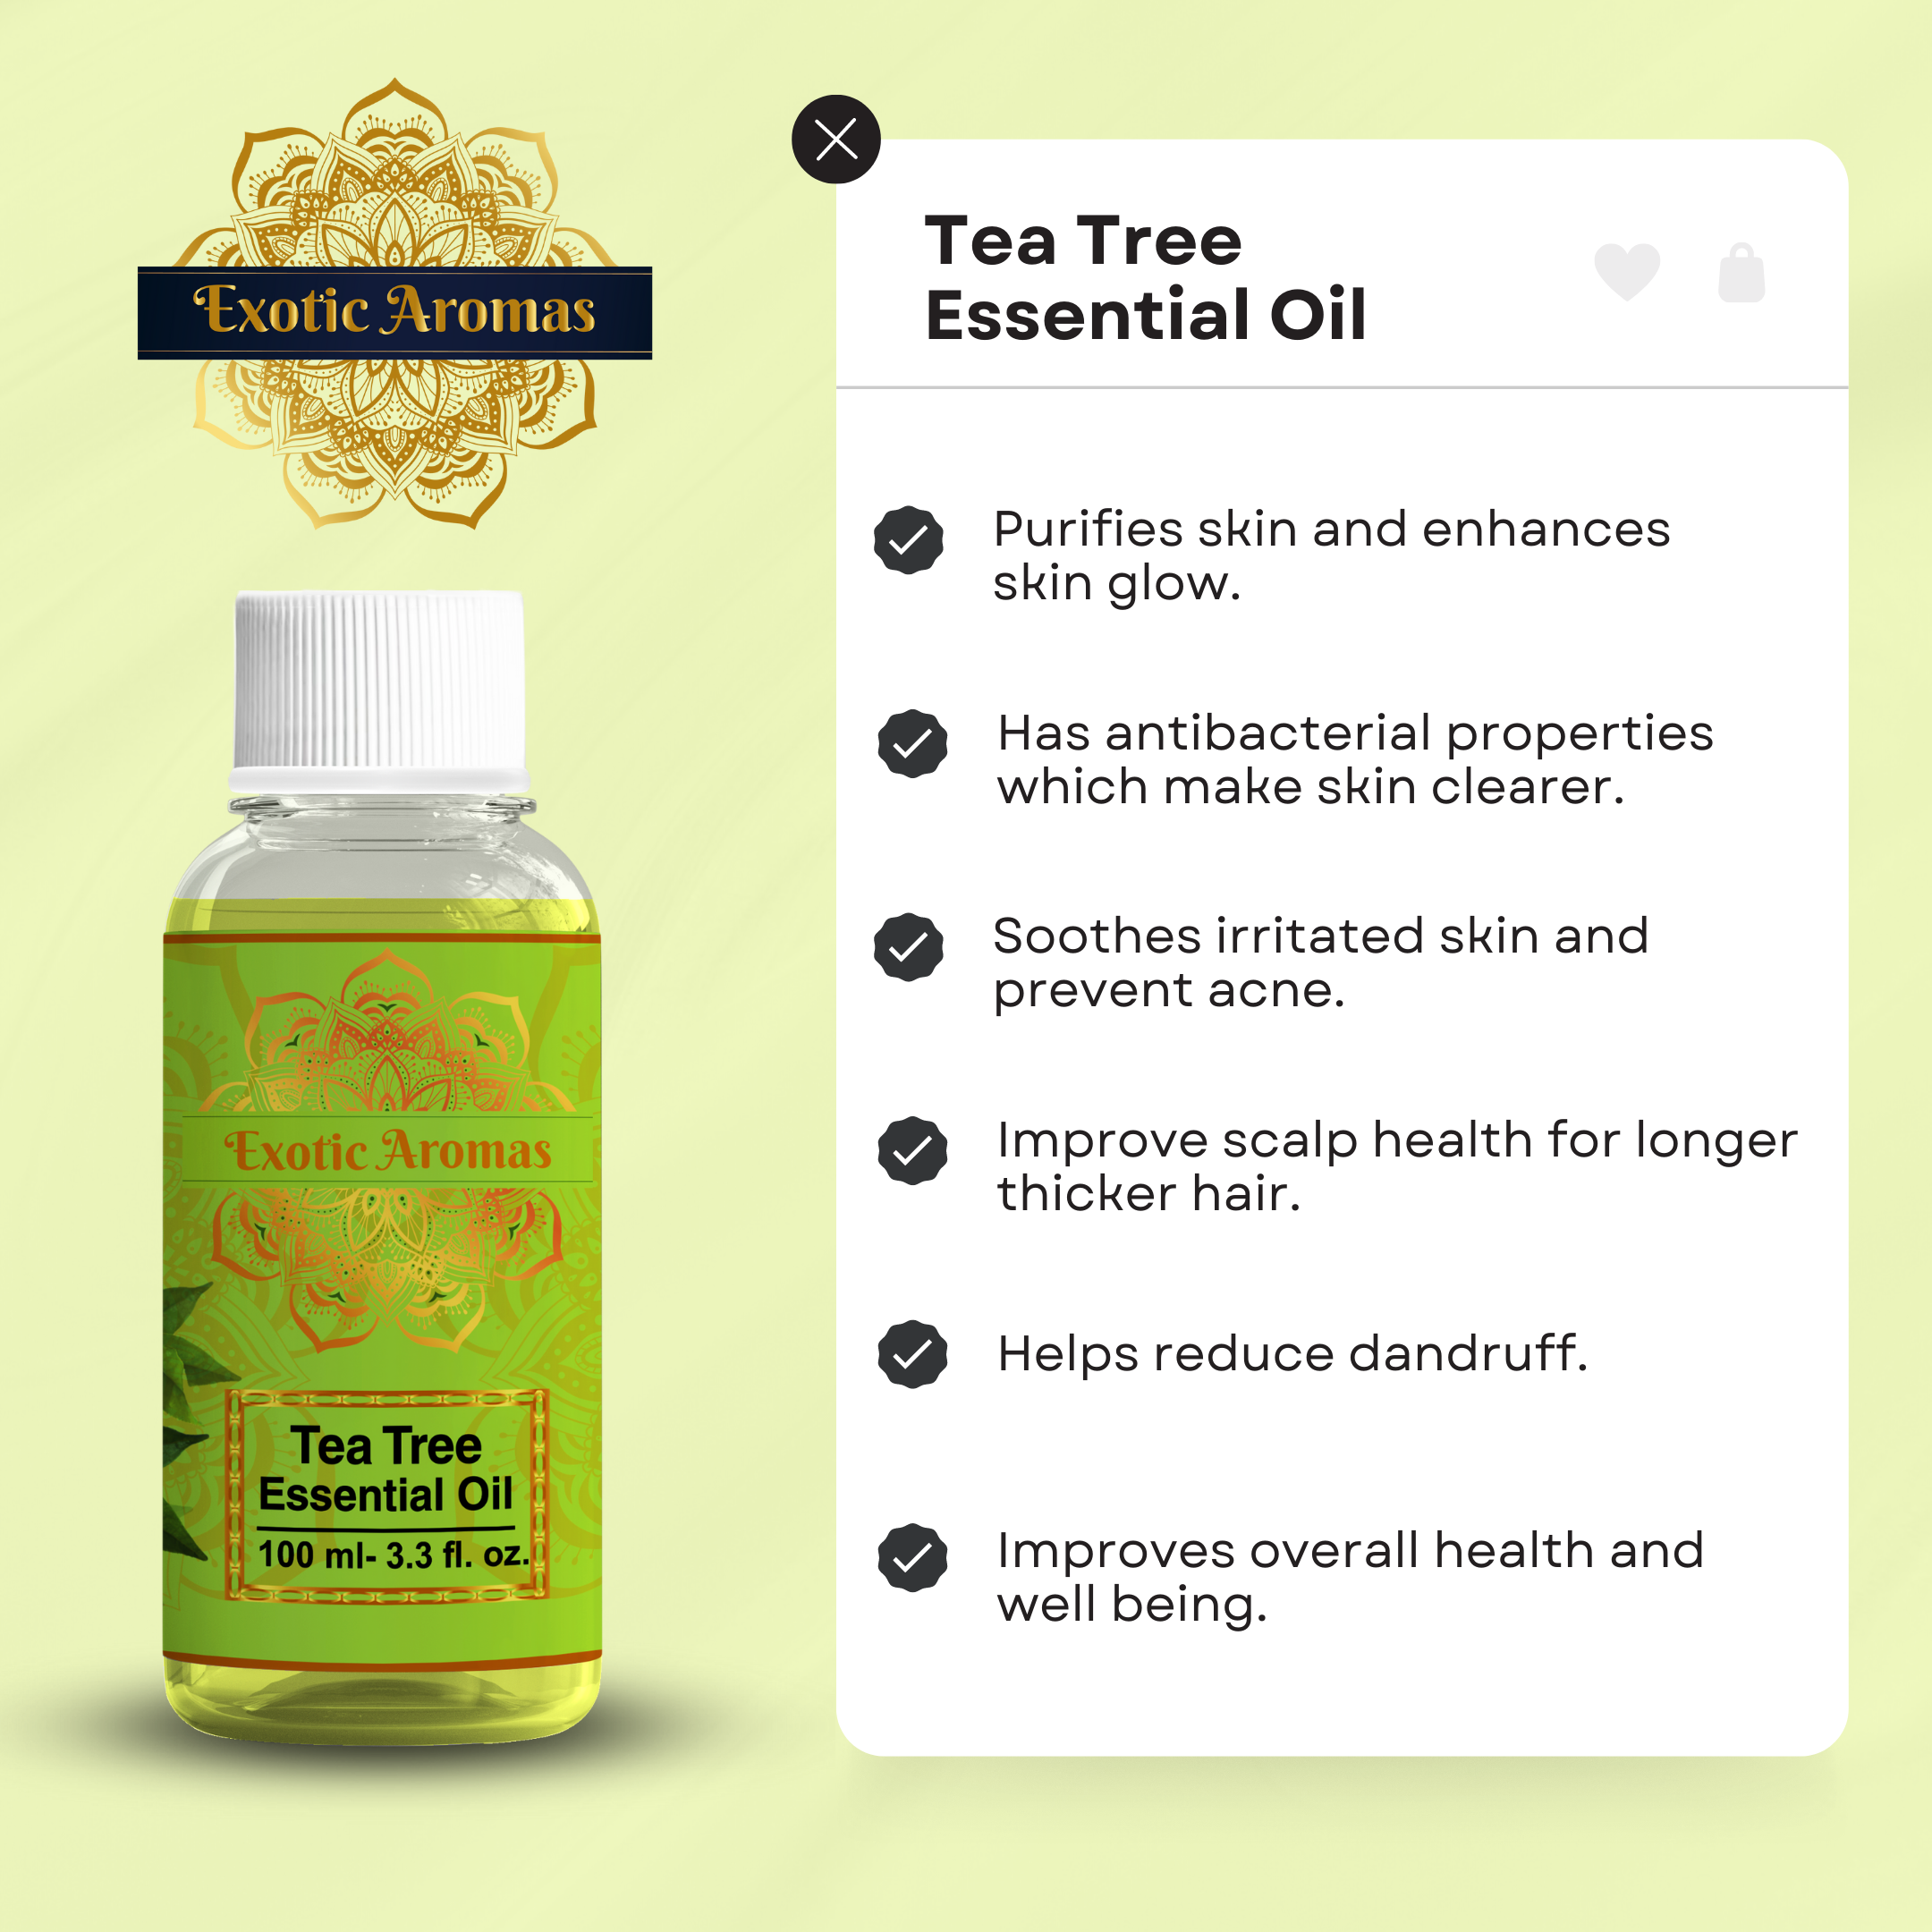 Vanilla Essential Oil – Shop Exotic Aromas